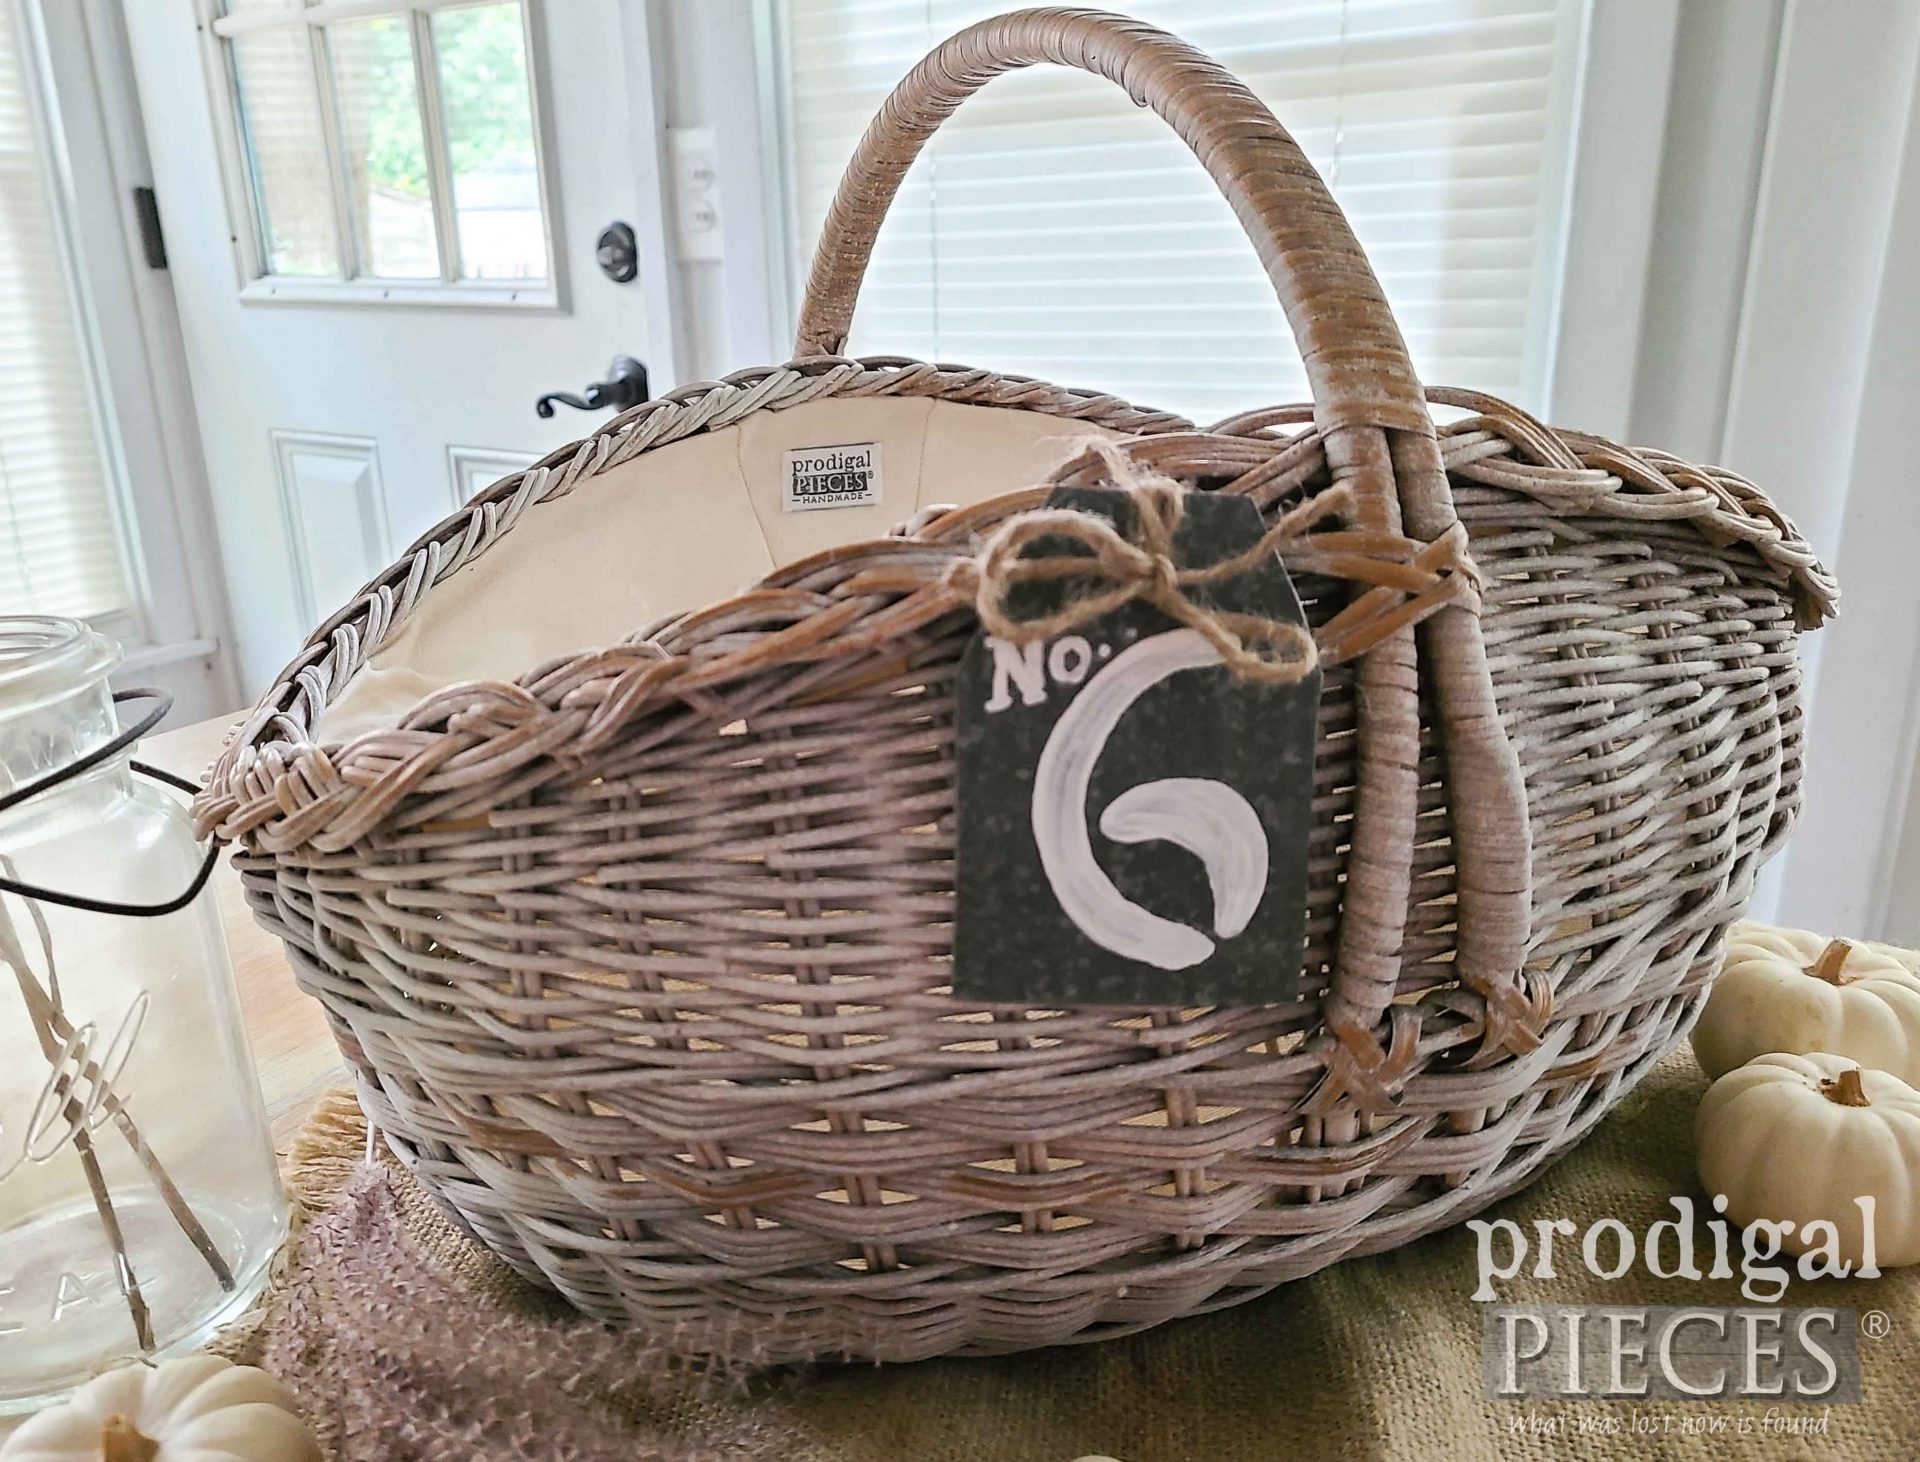 Prodigal Pieces Harvest Gift Basket DIY Tutorial | prodigalpieces.com #prodigalpieces #diy #farmhouse #home